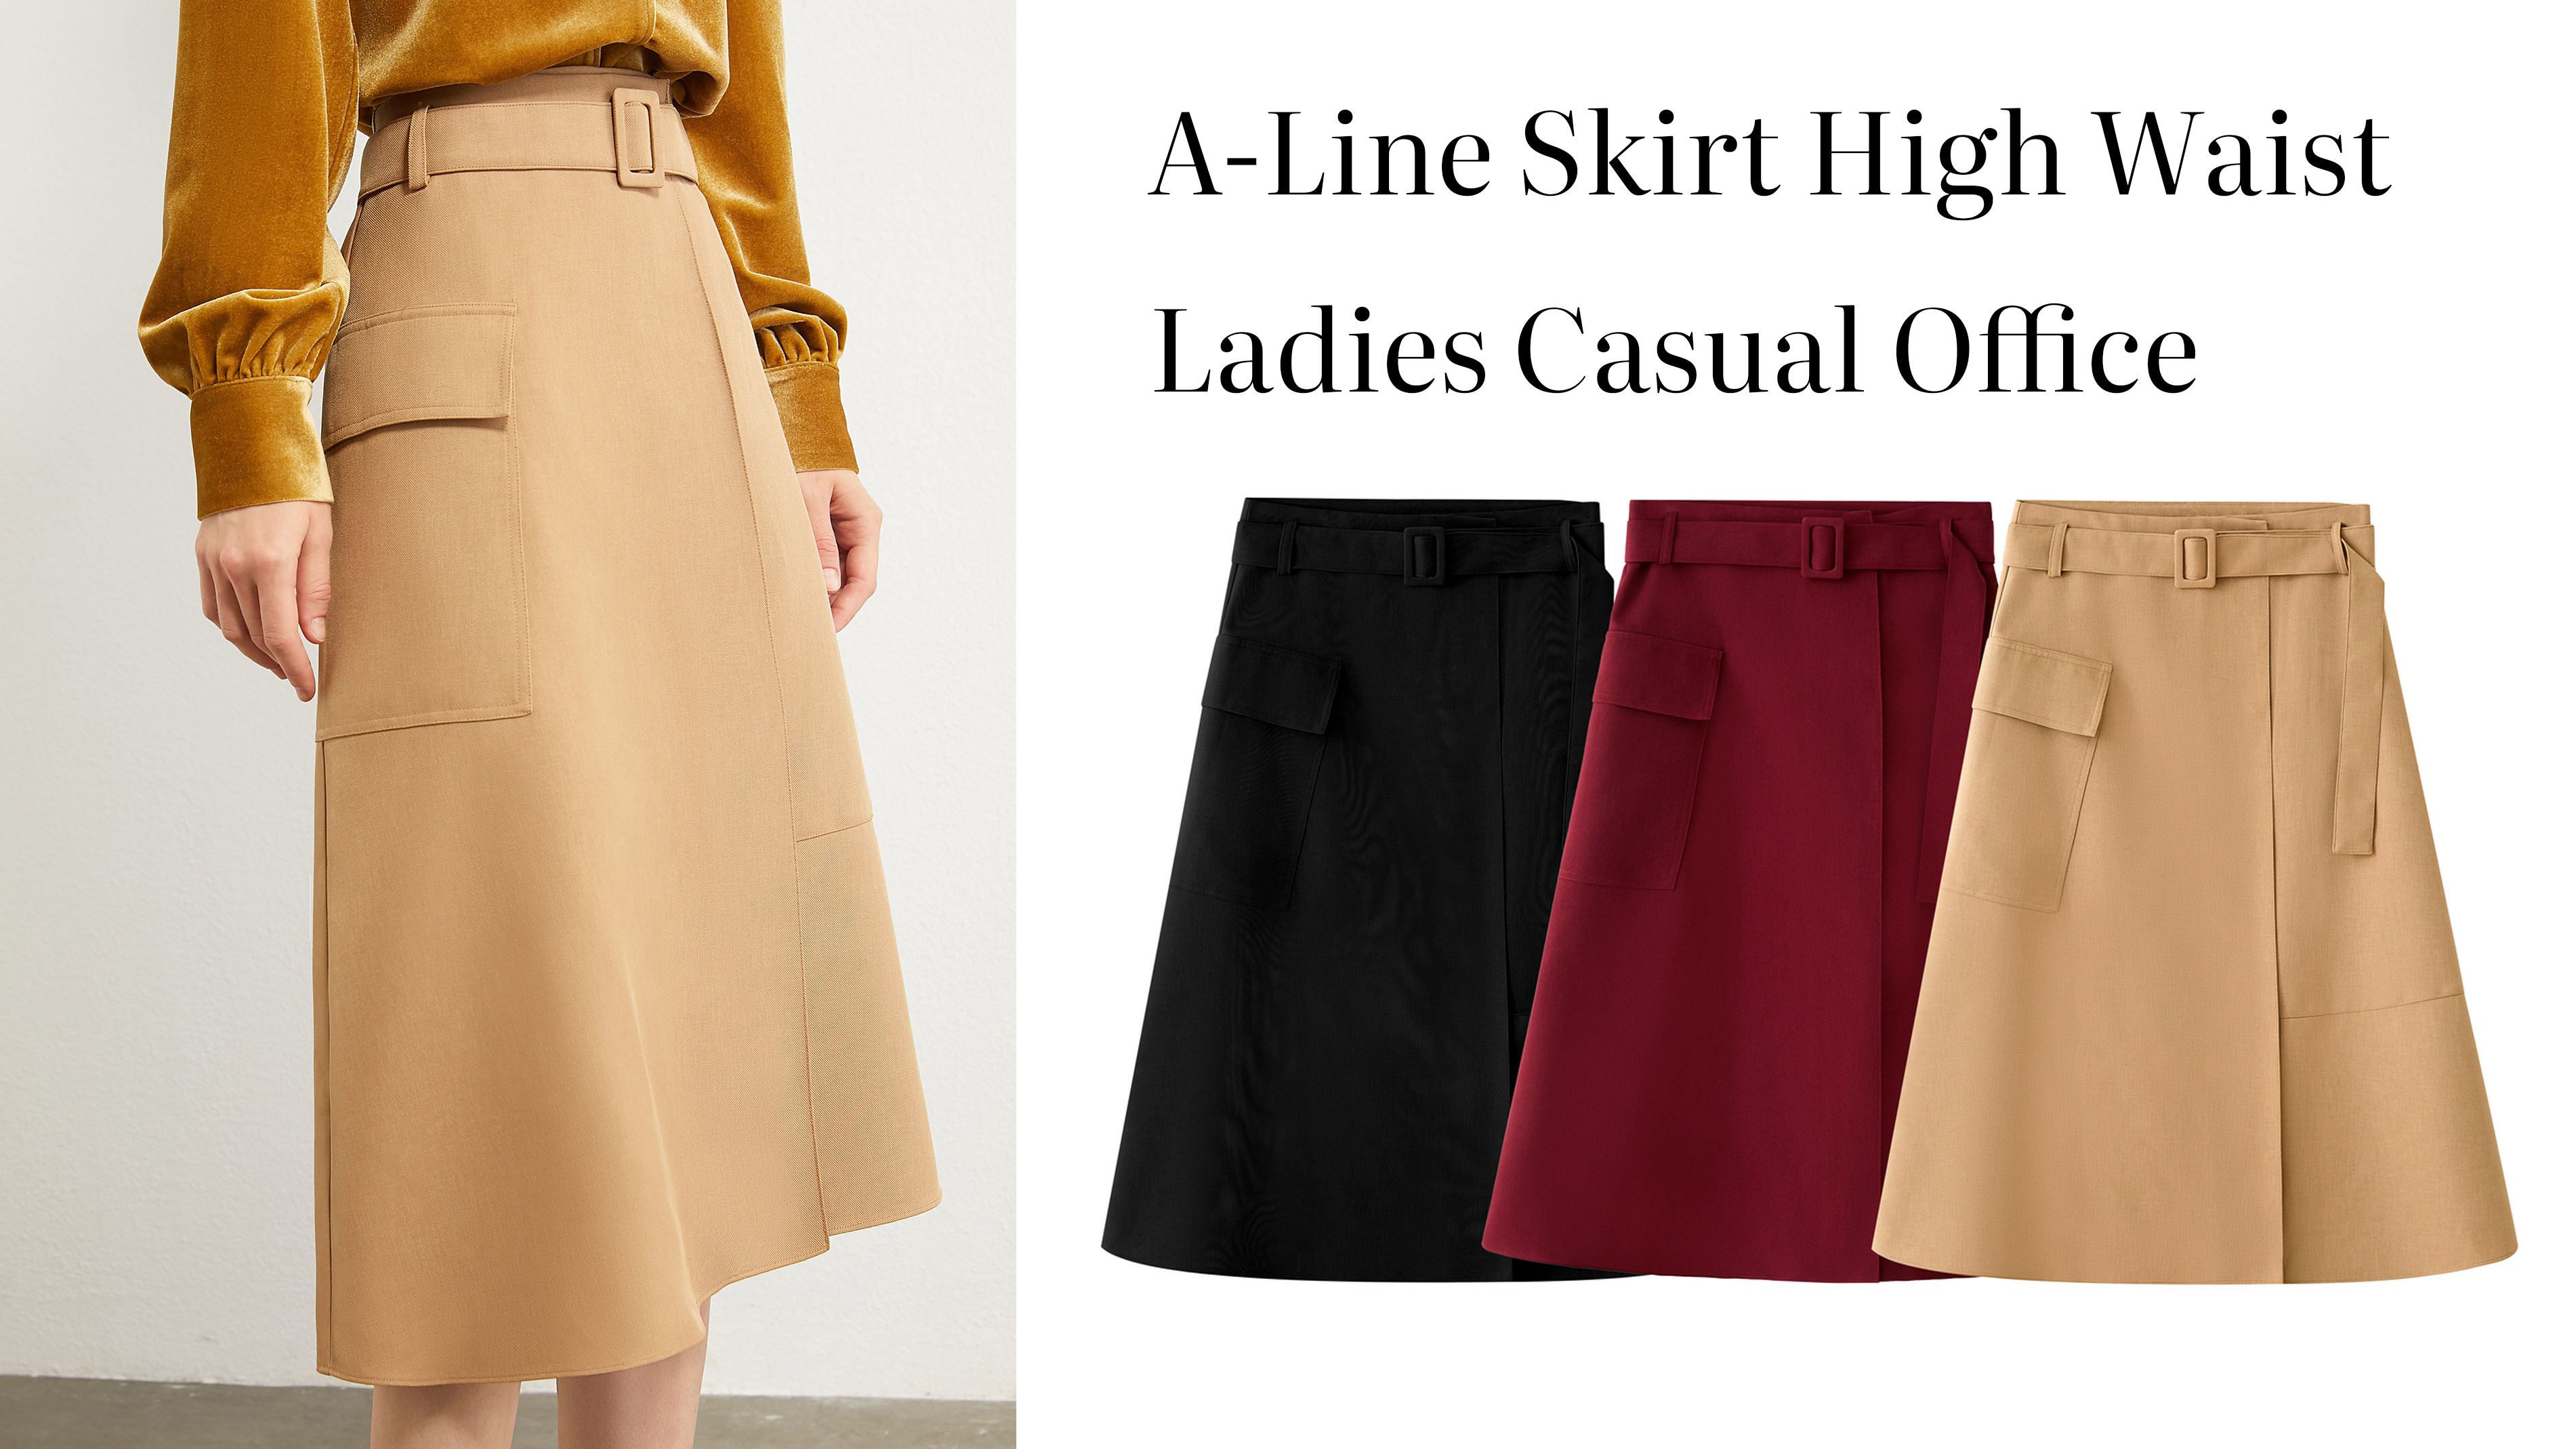 Quality A-Line Skirt High Waist Ladies Casual Office Manufacturer |Auschalink